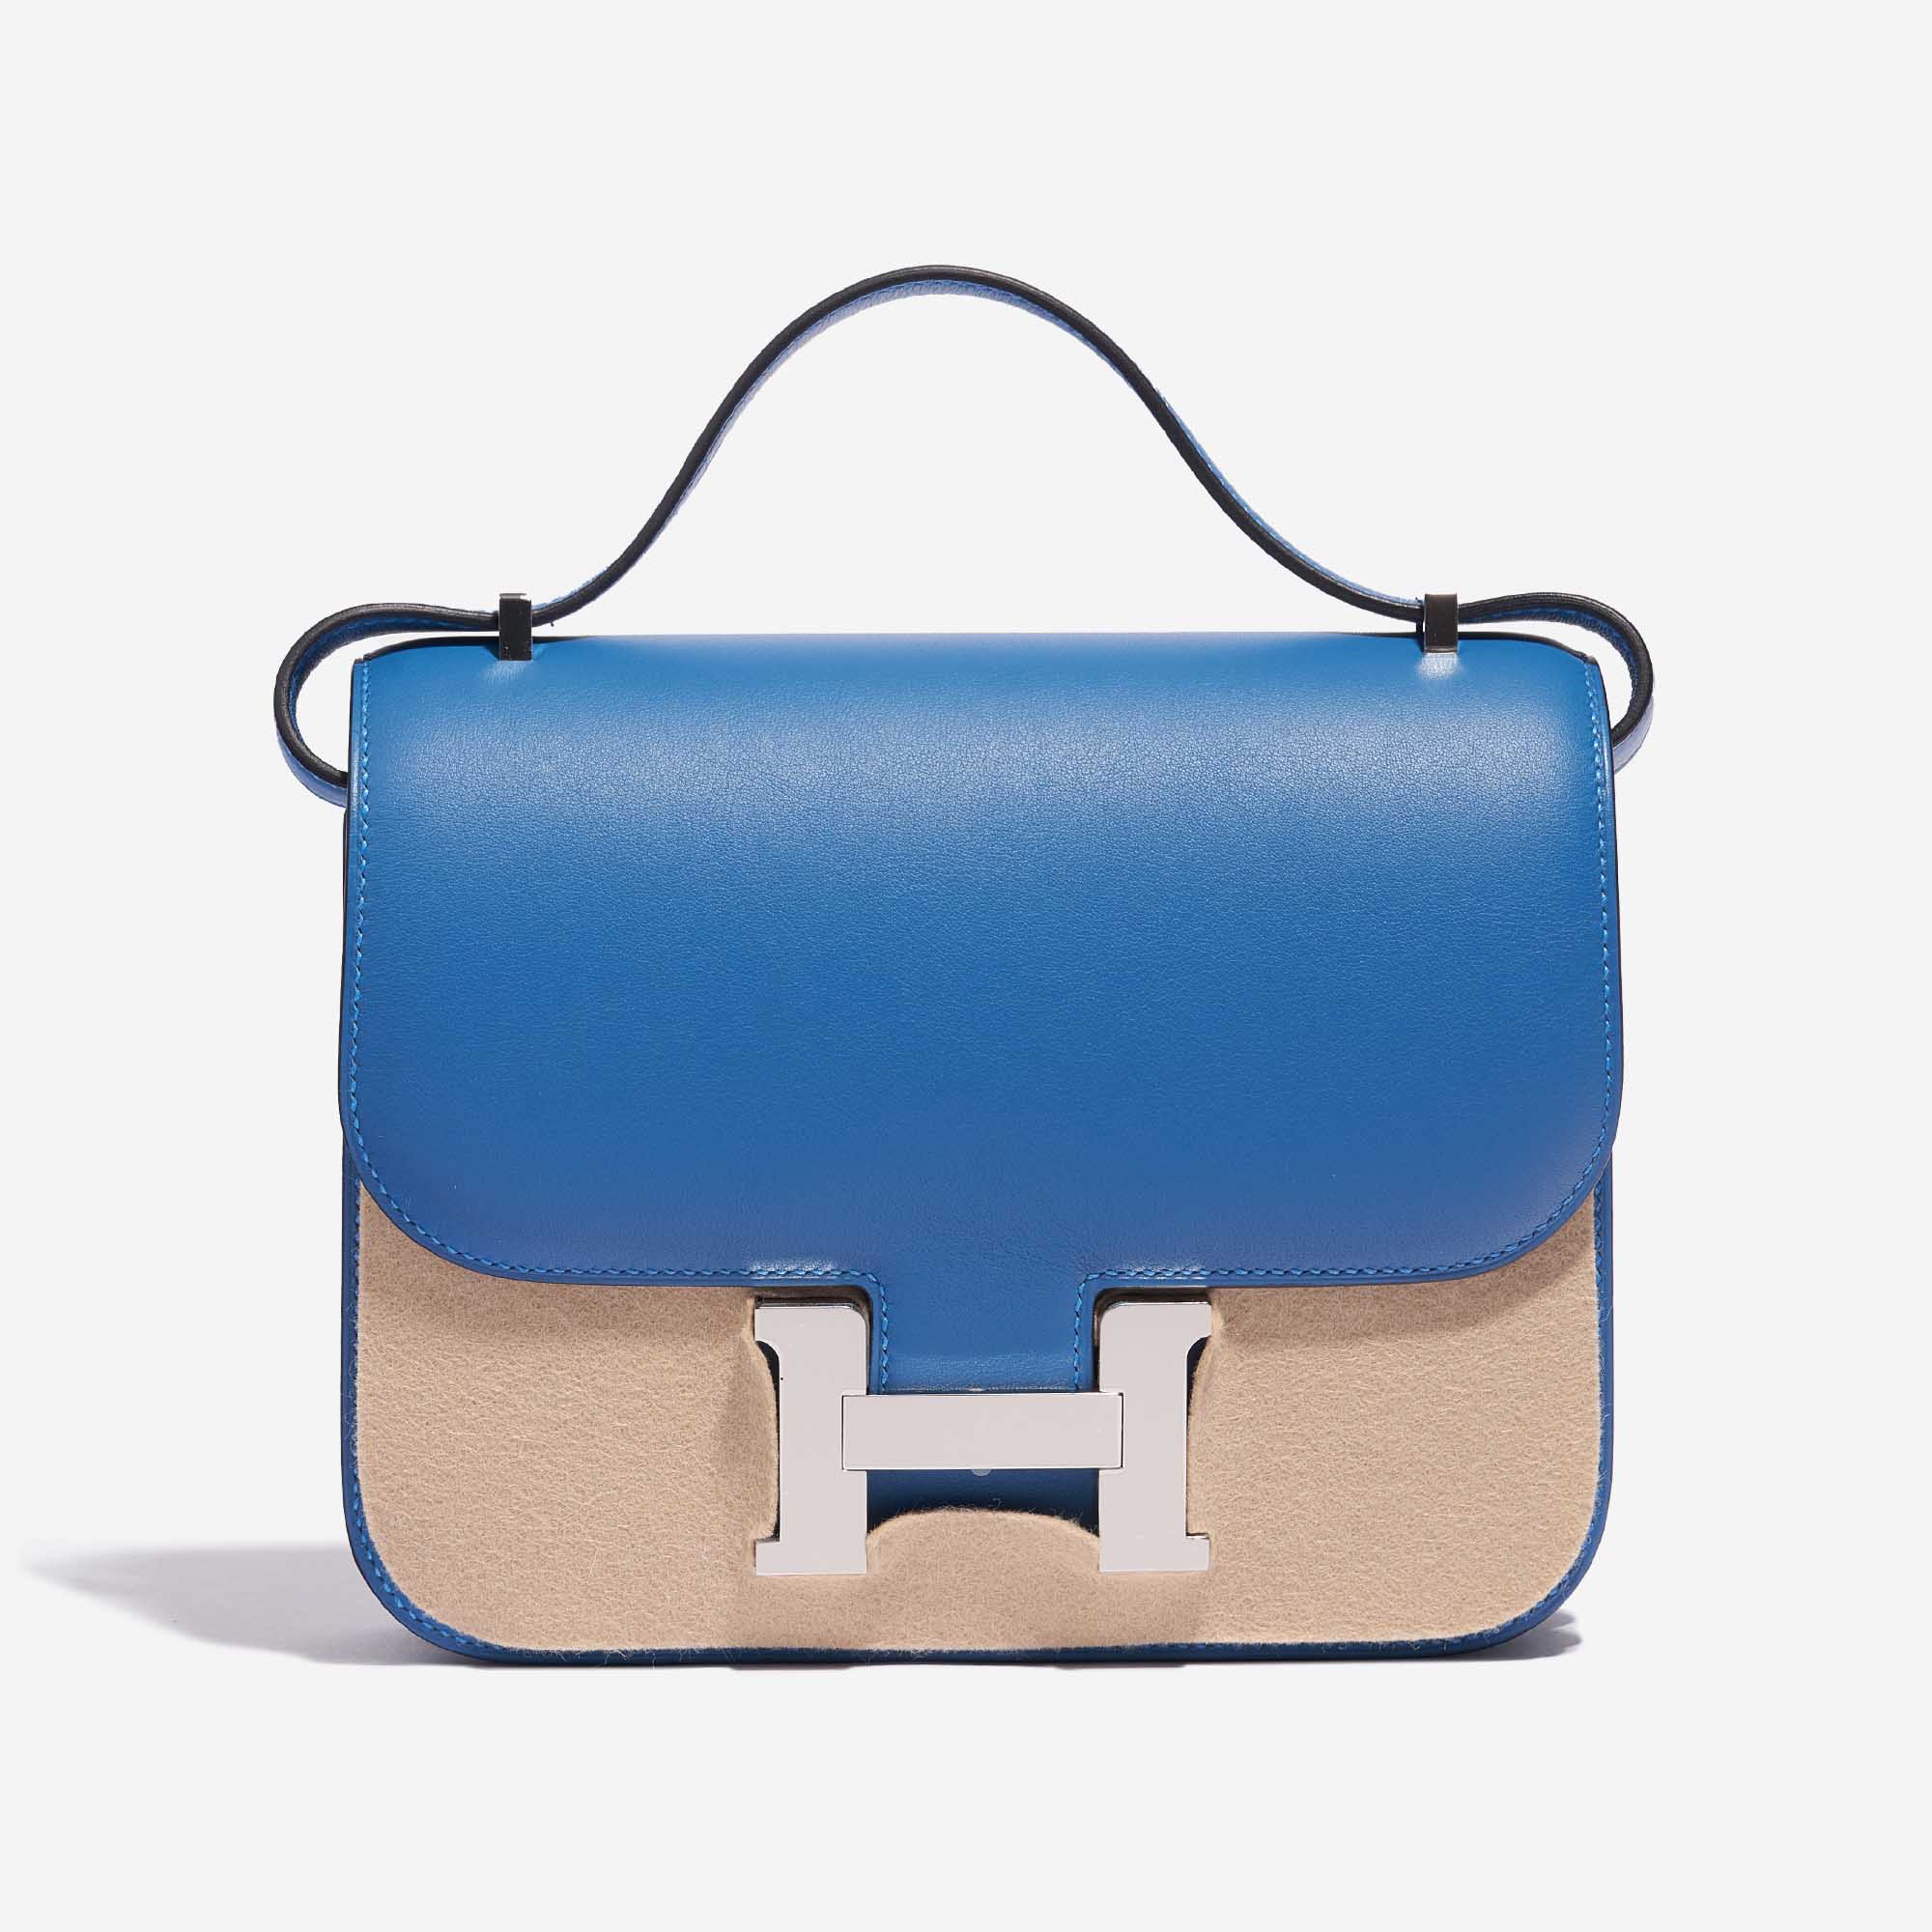 Sac Hermès d'occasion Constance 18 Swift Bleu Mykonos / Bleu Encre Bleu Front Velt | Vendez votre sac de créateur sur Saclab.com